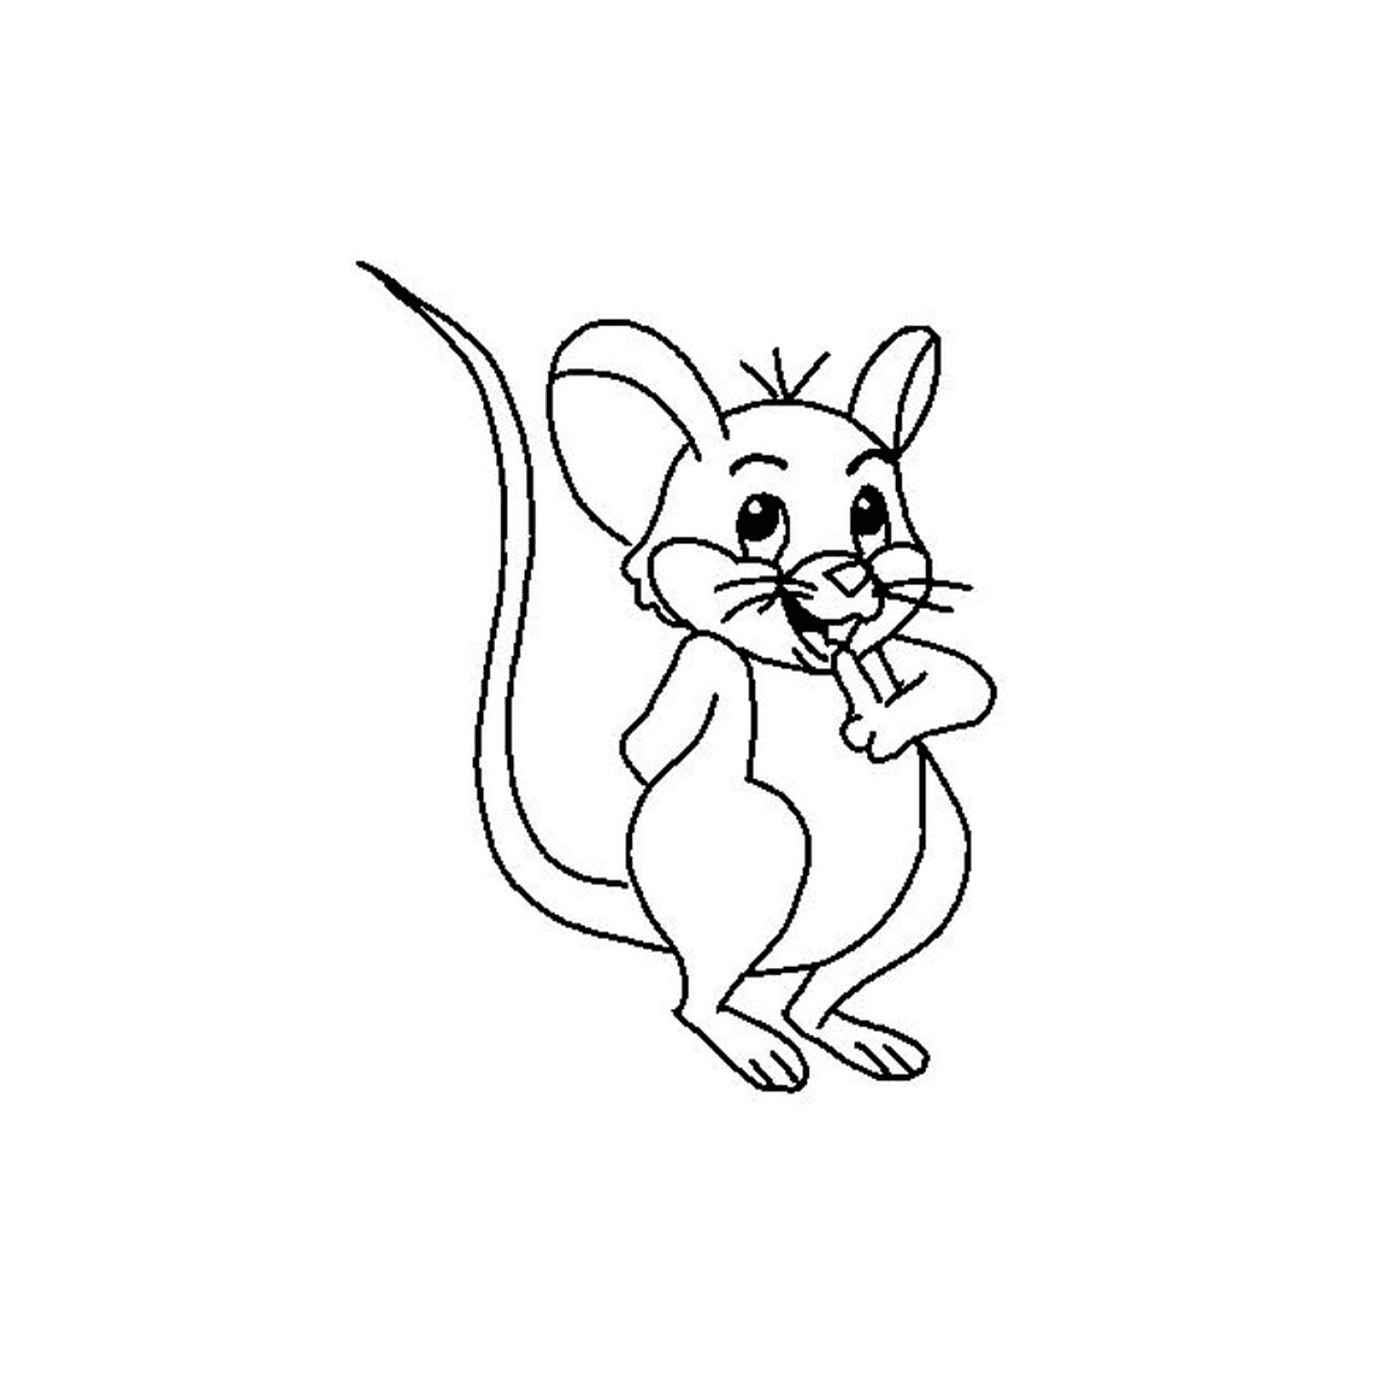  Un ratón materno 